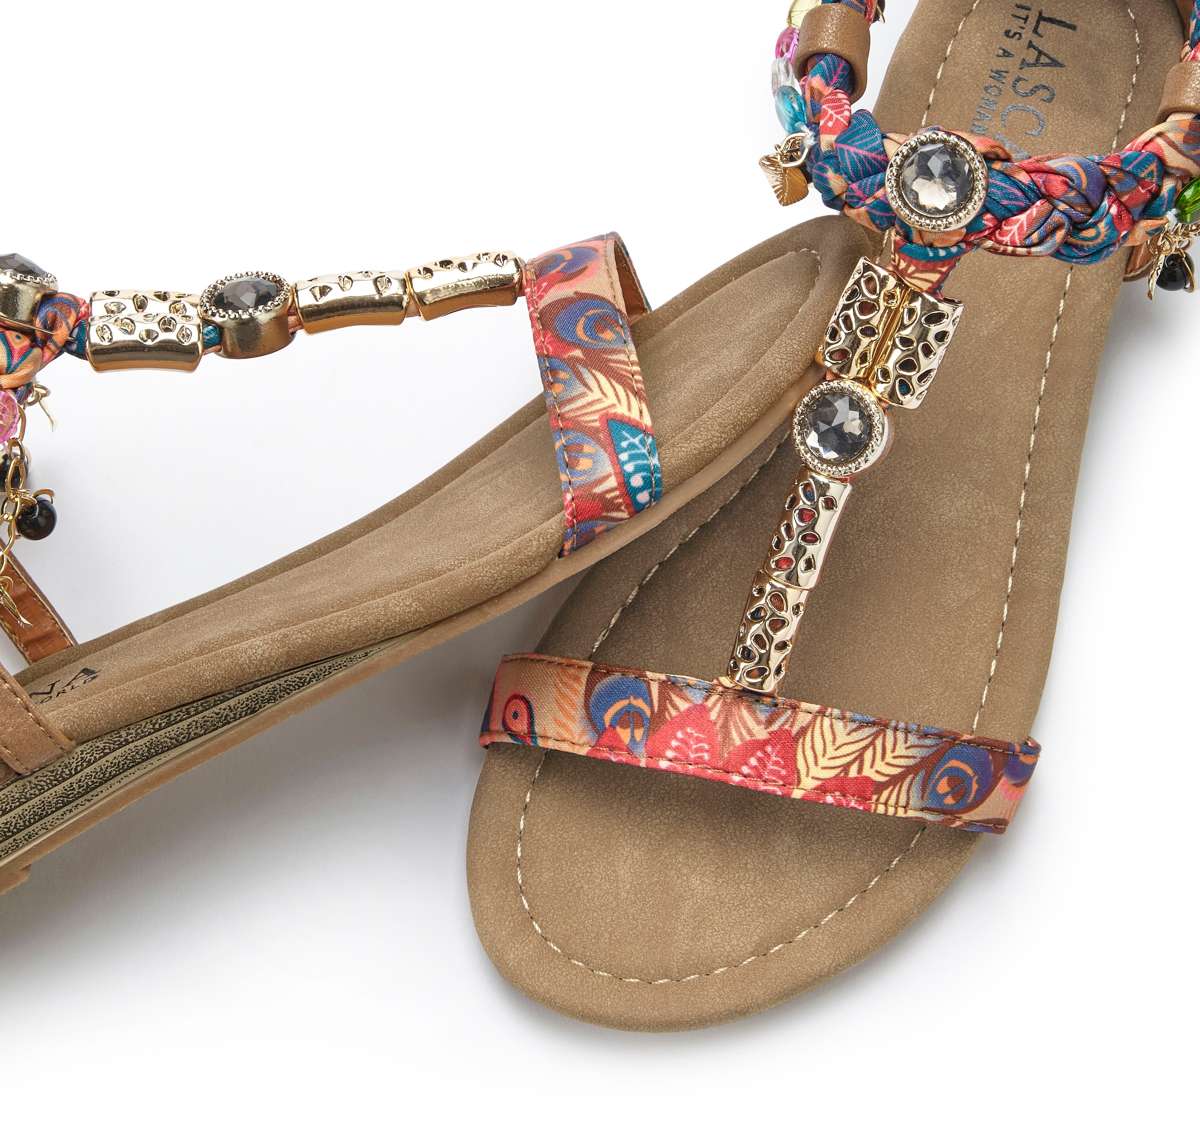 Сандалии, босоножки, летние туфли с декоративной цепочкой и драгоценными камнями VEGAN